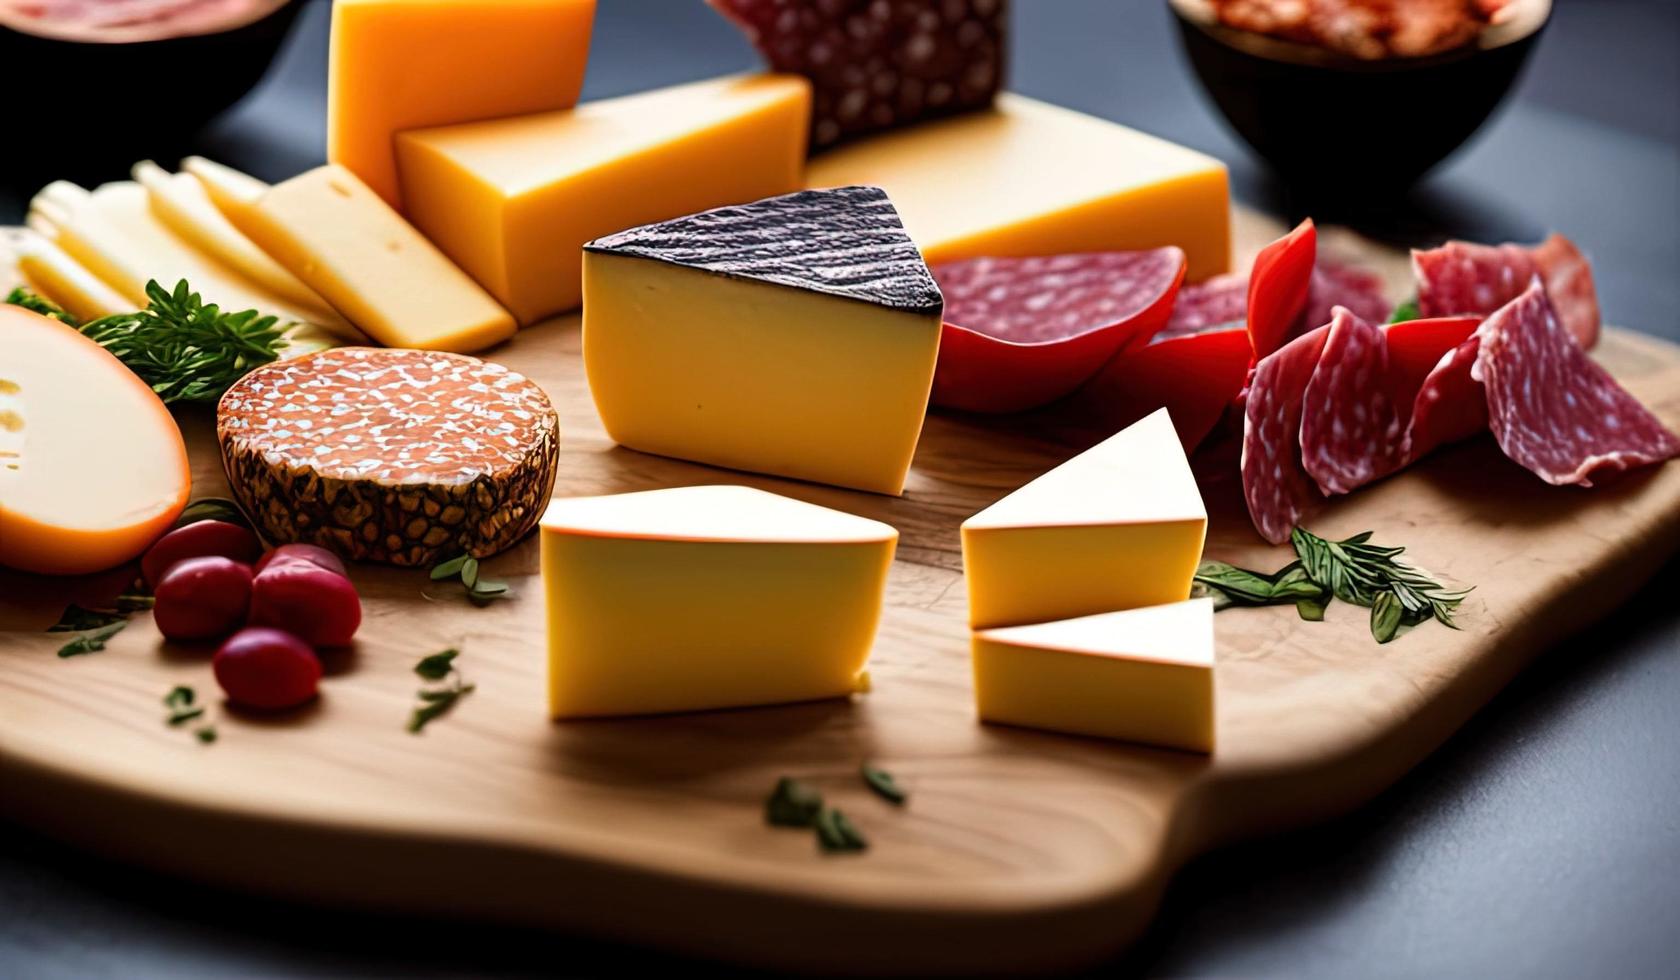 rofessional mat fotografi stänga upp av en ost och charkuterivaror styrelse Sammanträde på topp av en tabell foto